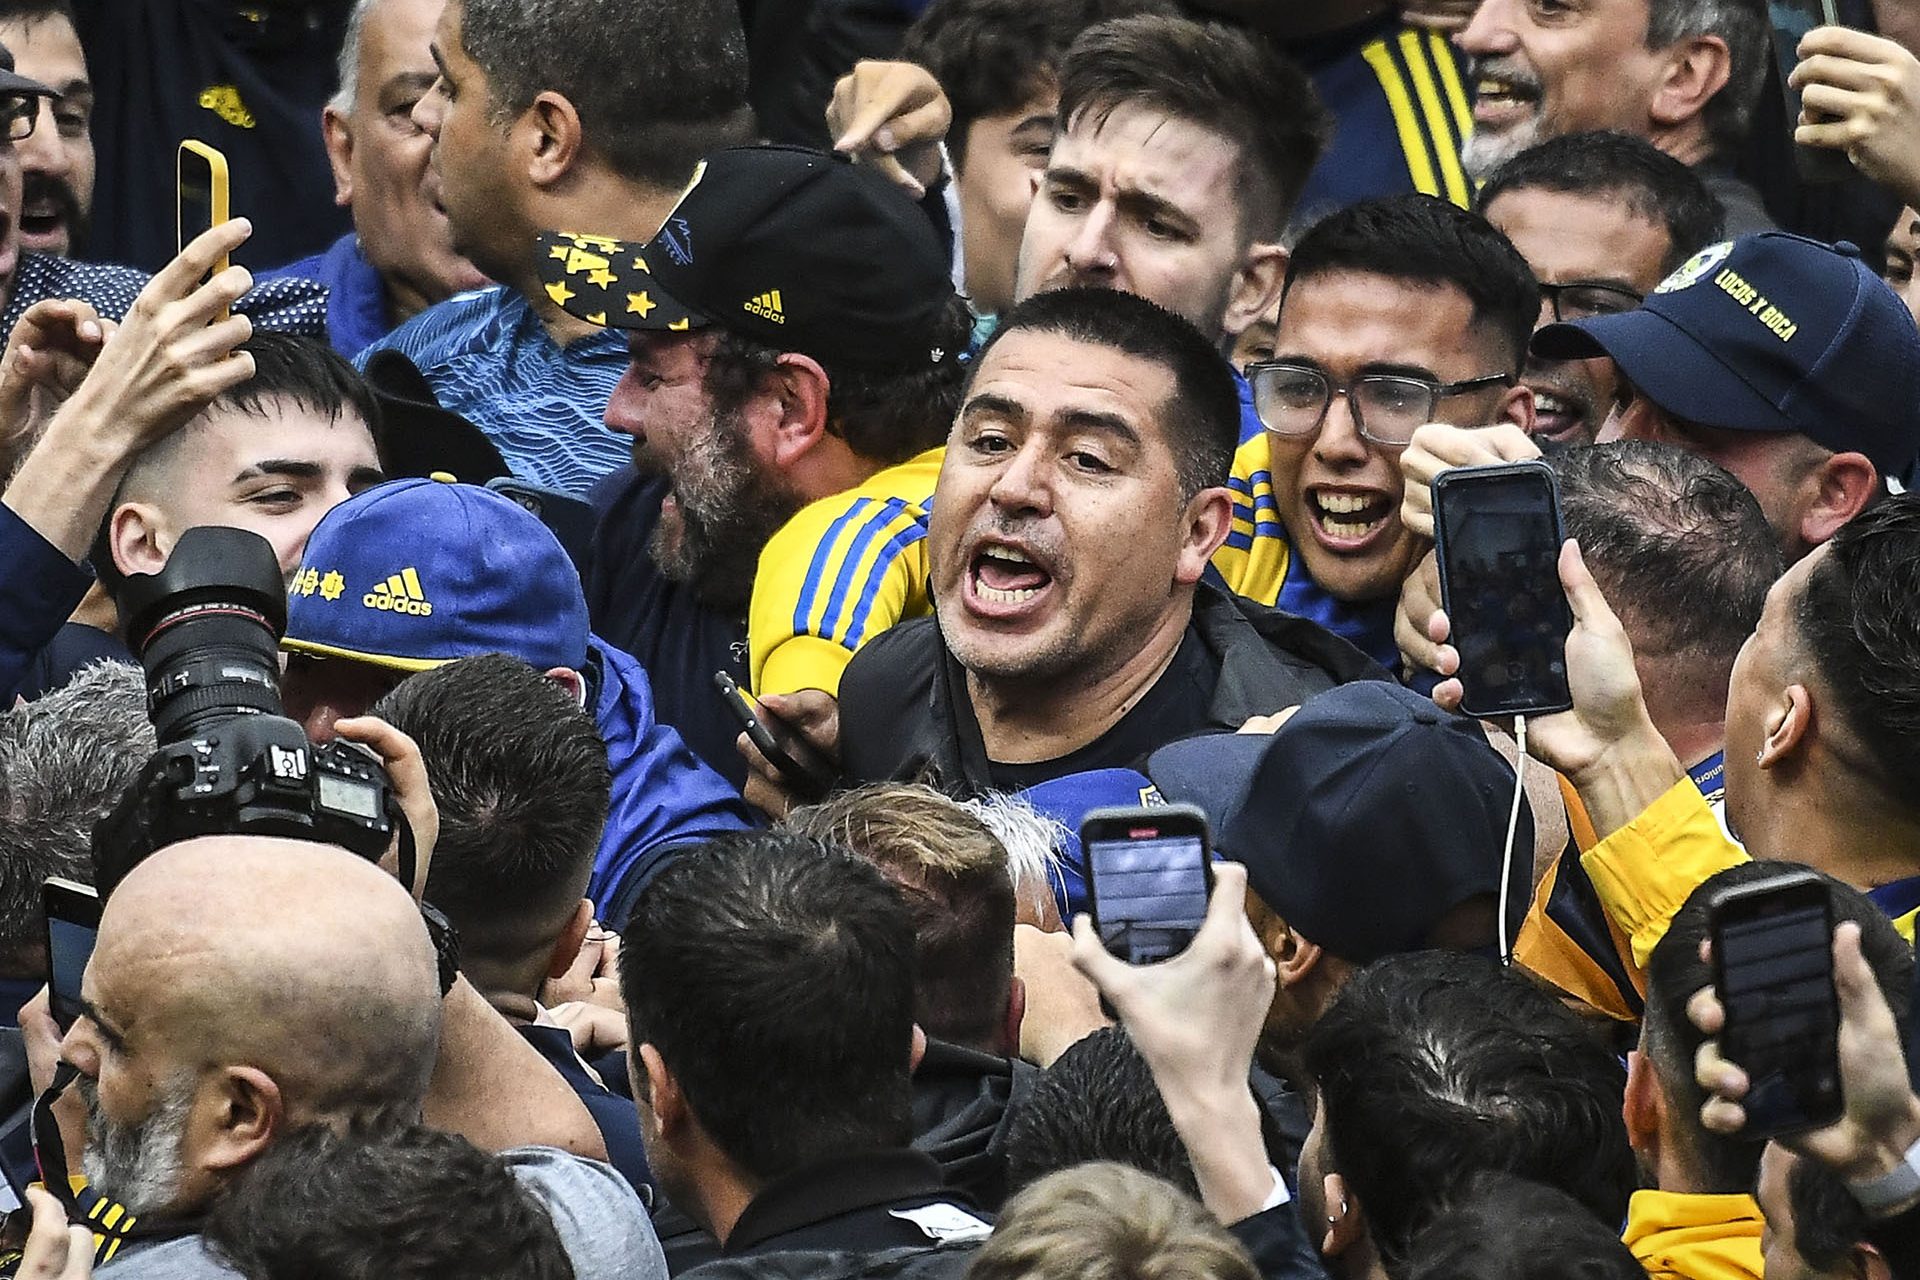 O que disse o Boca Juniors?